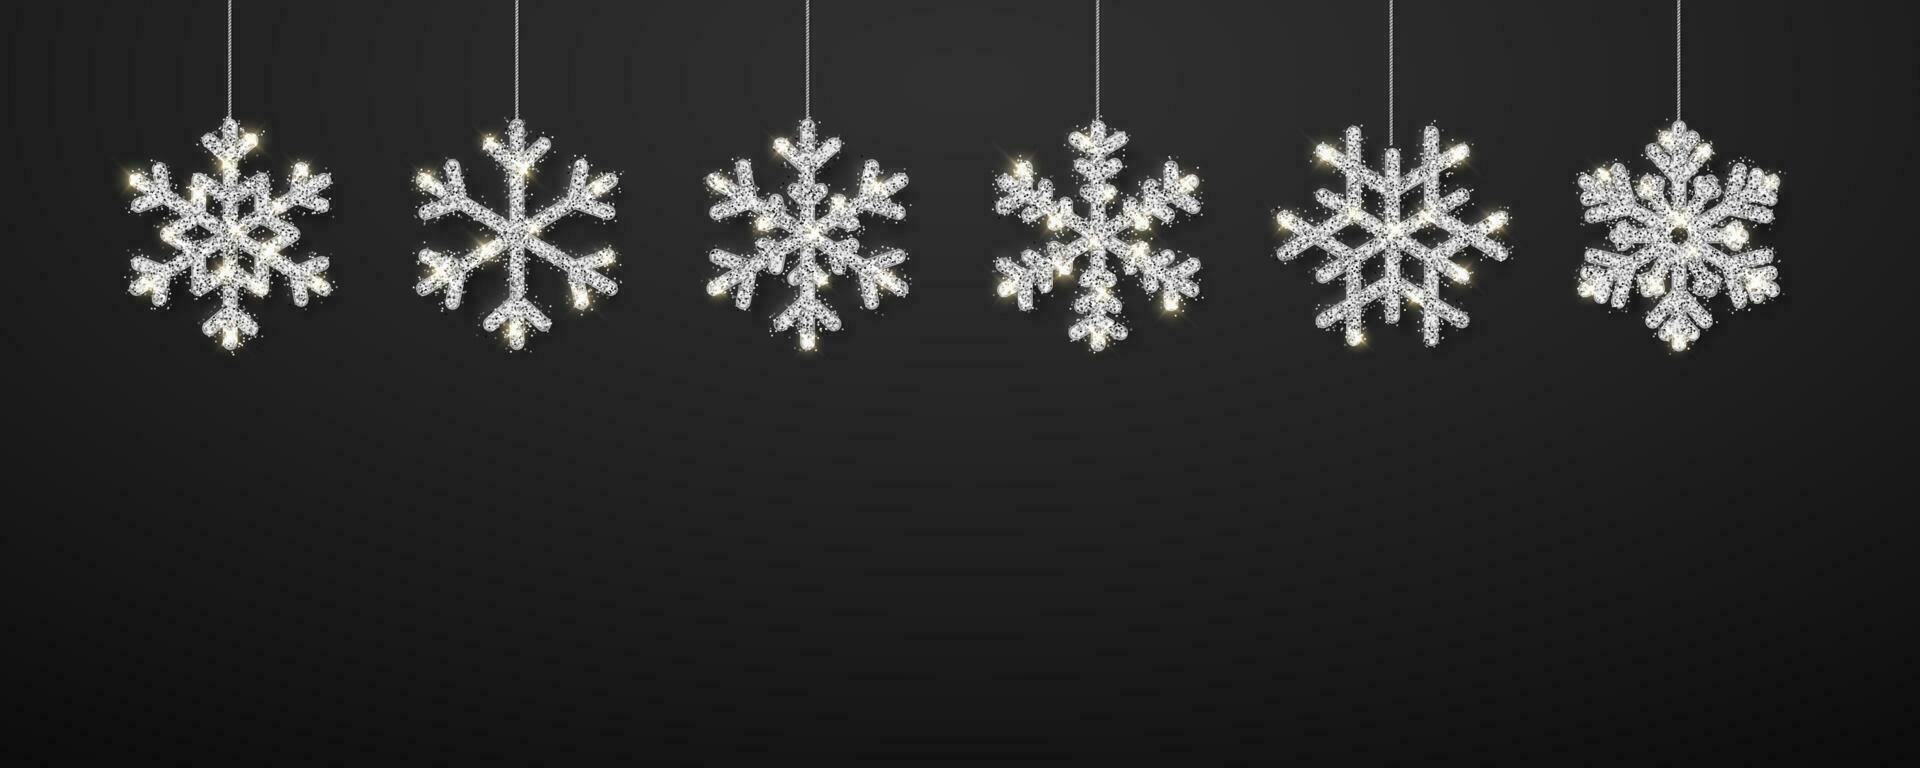 lysande silver- snöflingor på svart bakgrund. jul och ny år bakgrund. vektor illustration